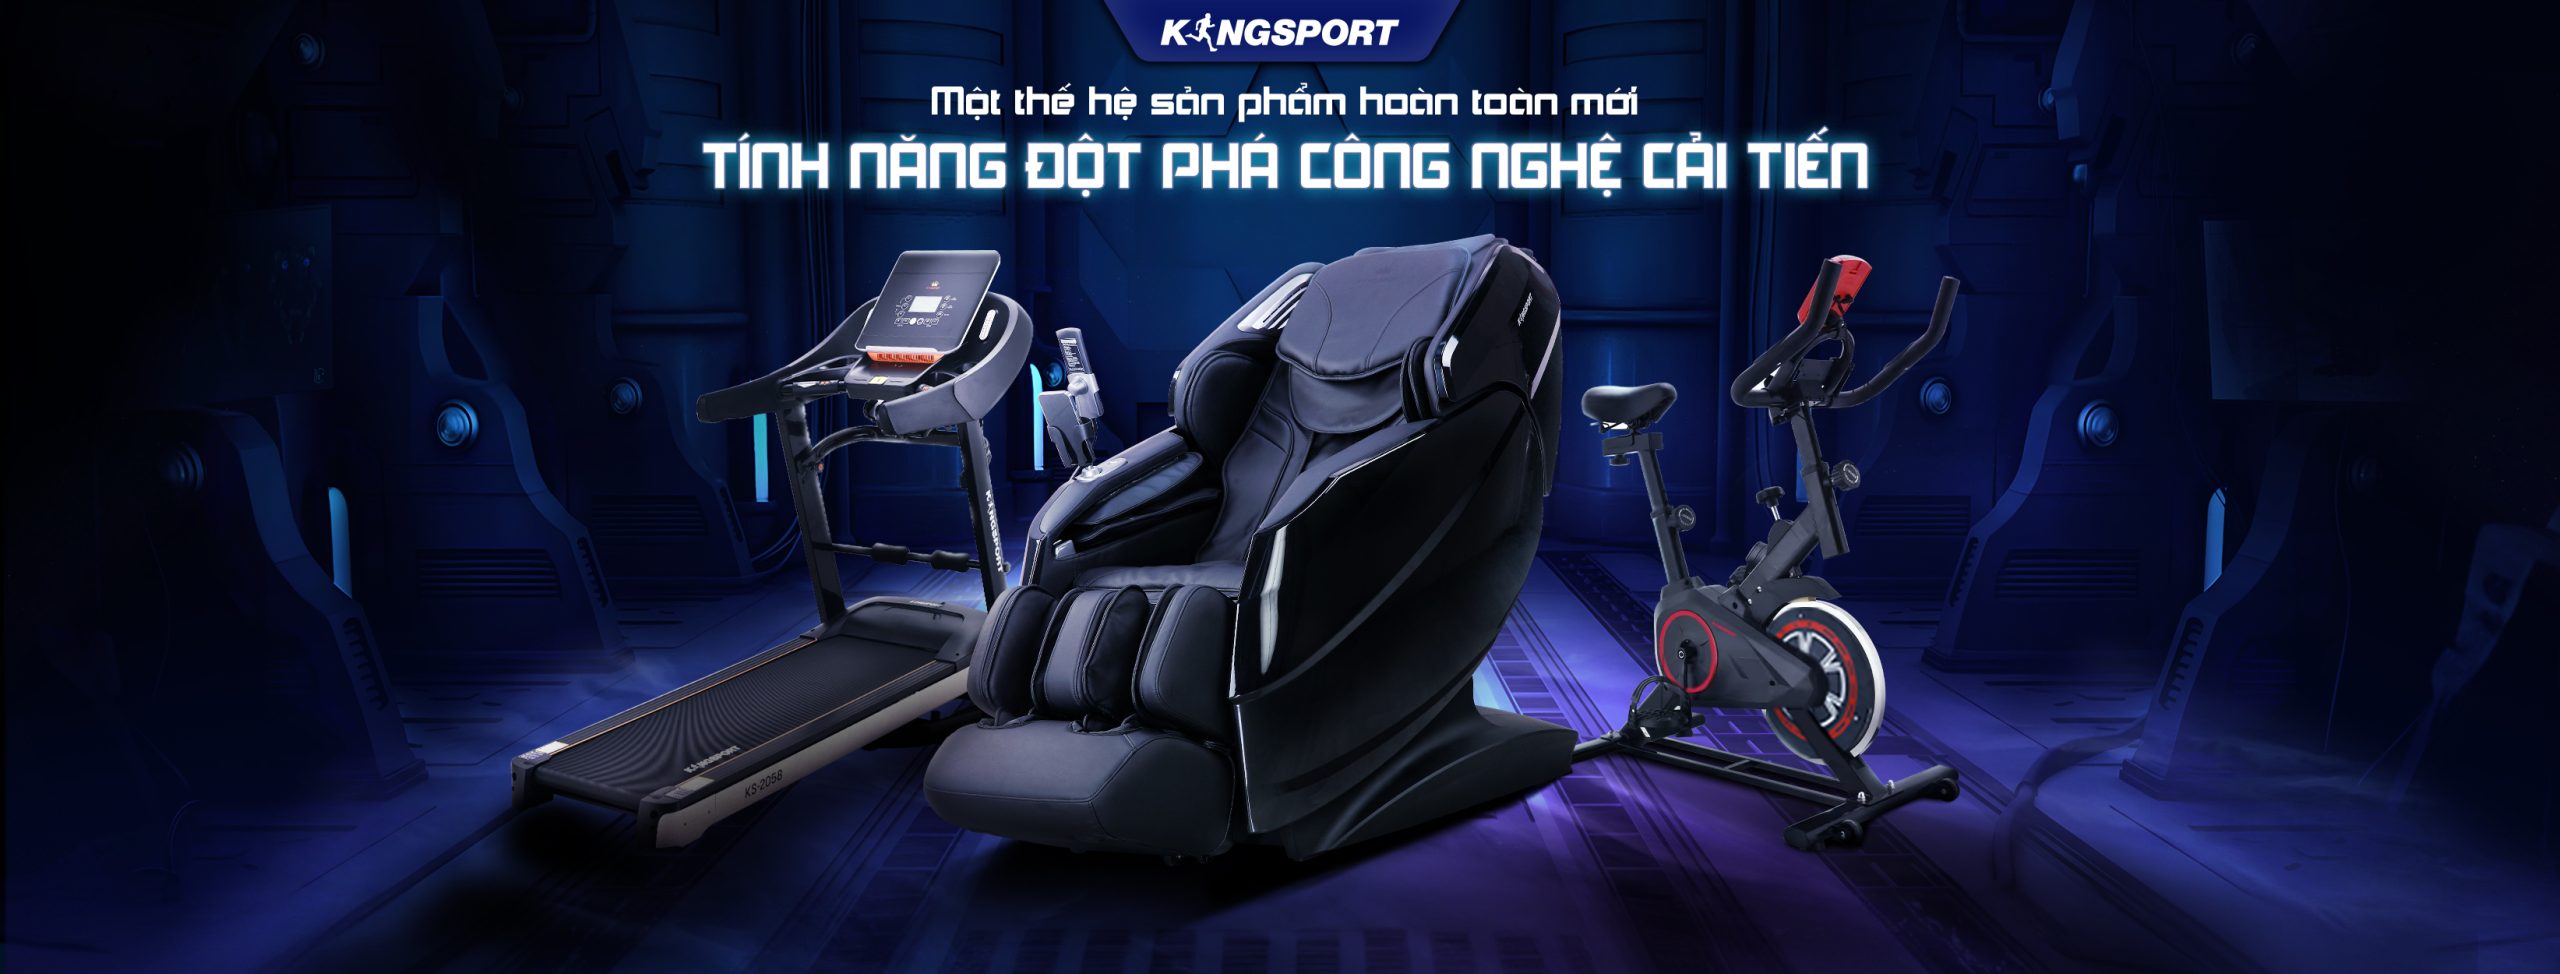 Kingsport - Nơi mua ghế massage Hà Nội uy tín